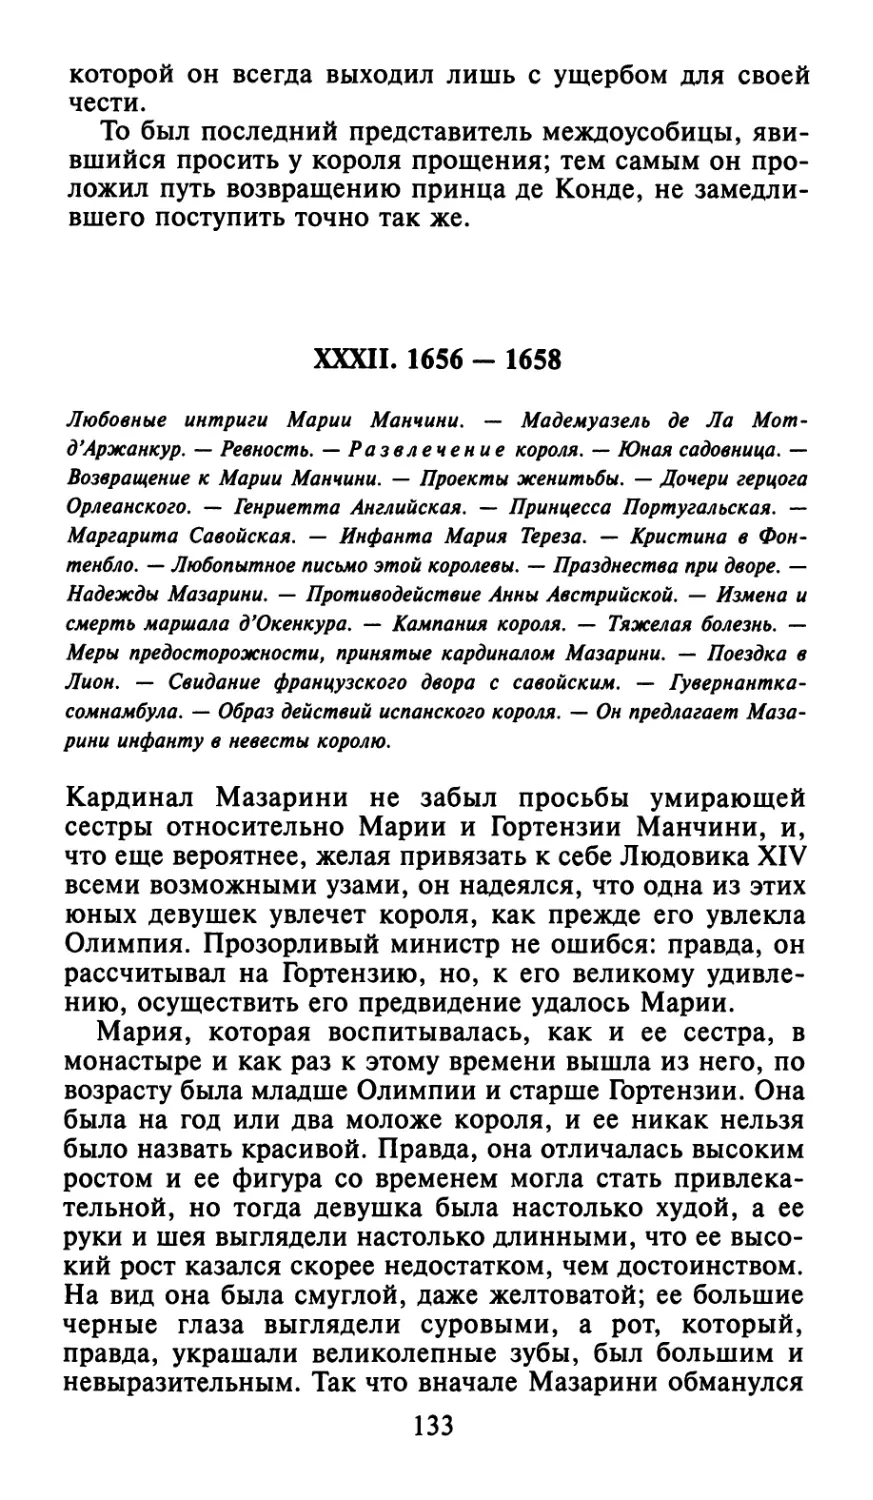 XXXII. 1656 - 1658